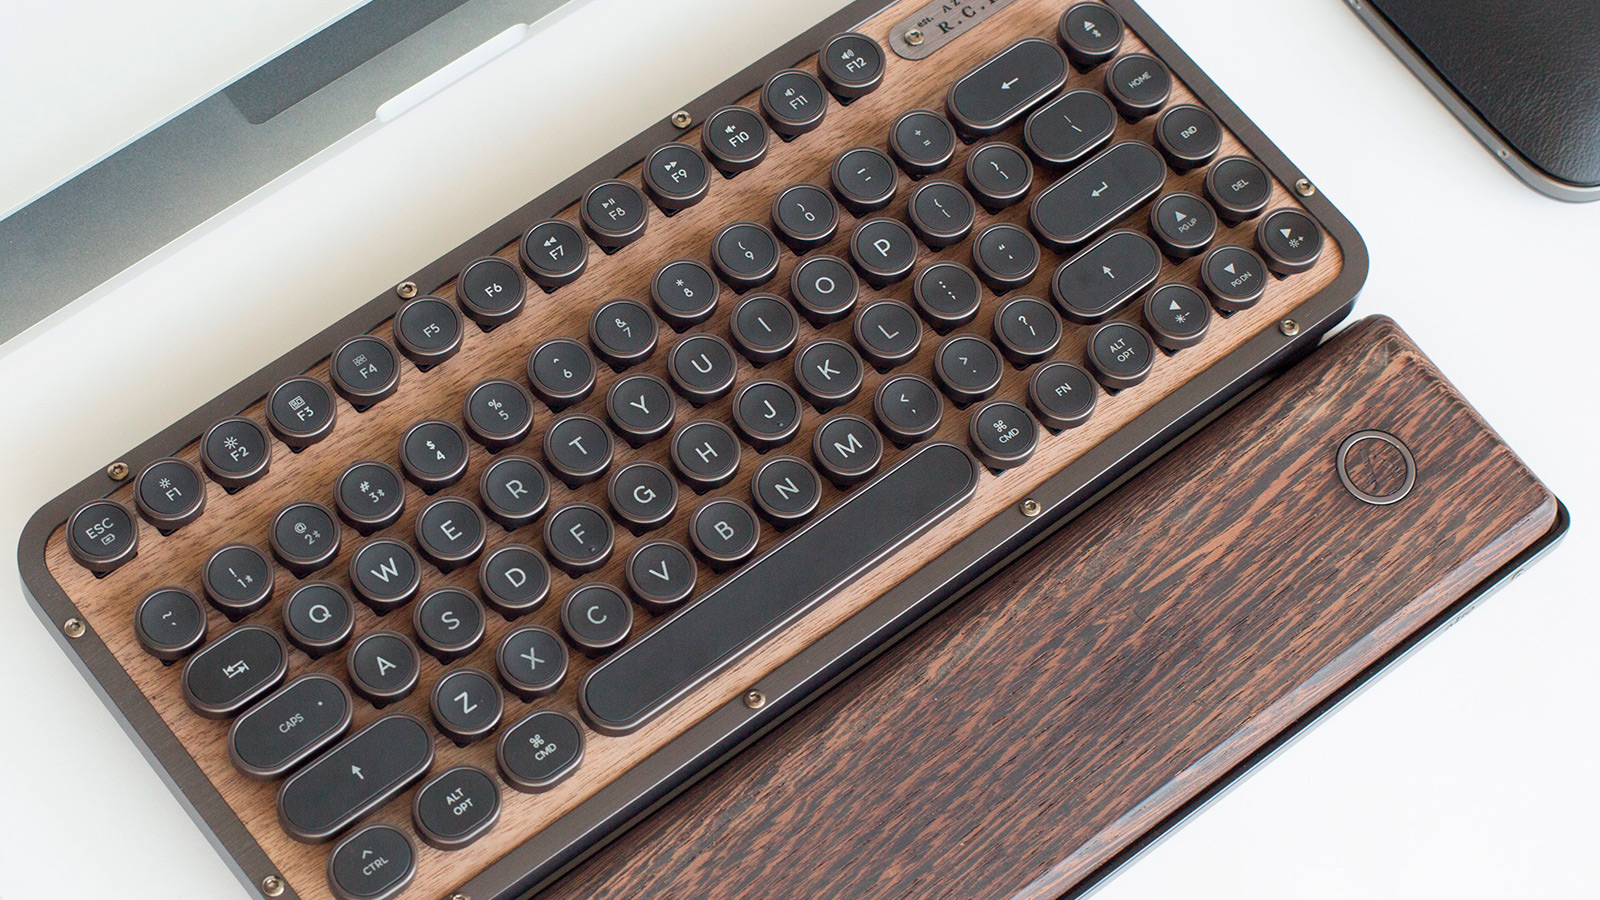 azio typewriter keyboard